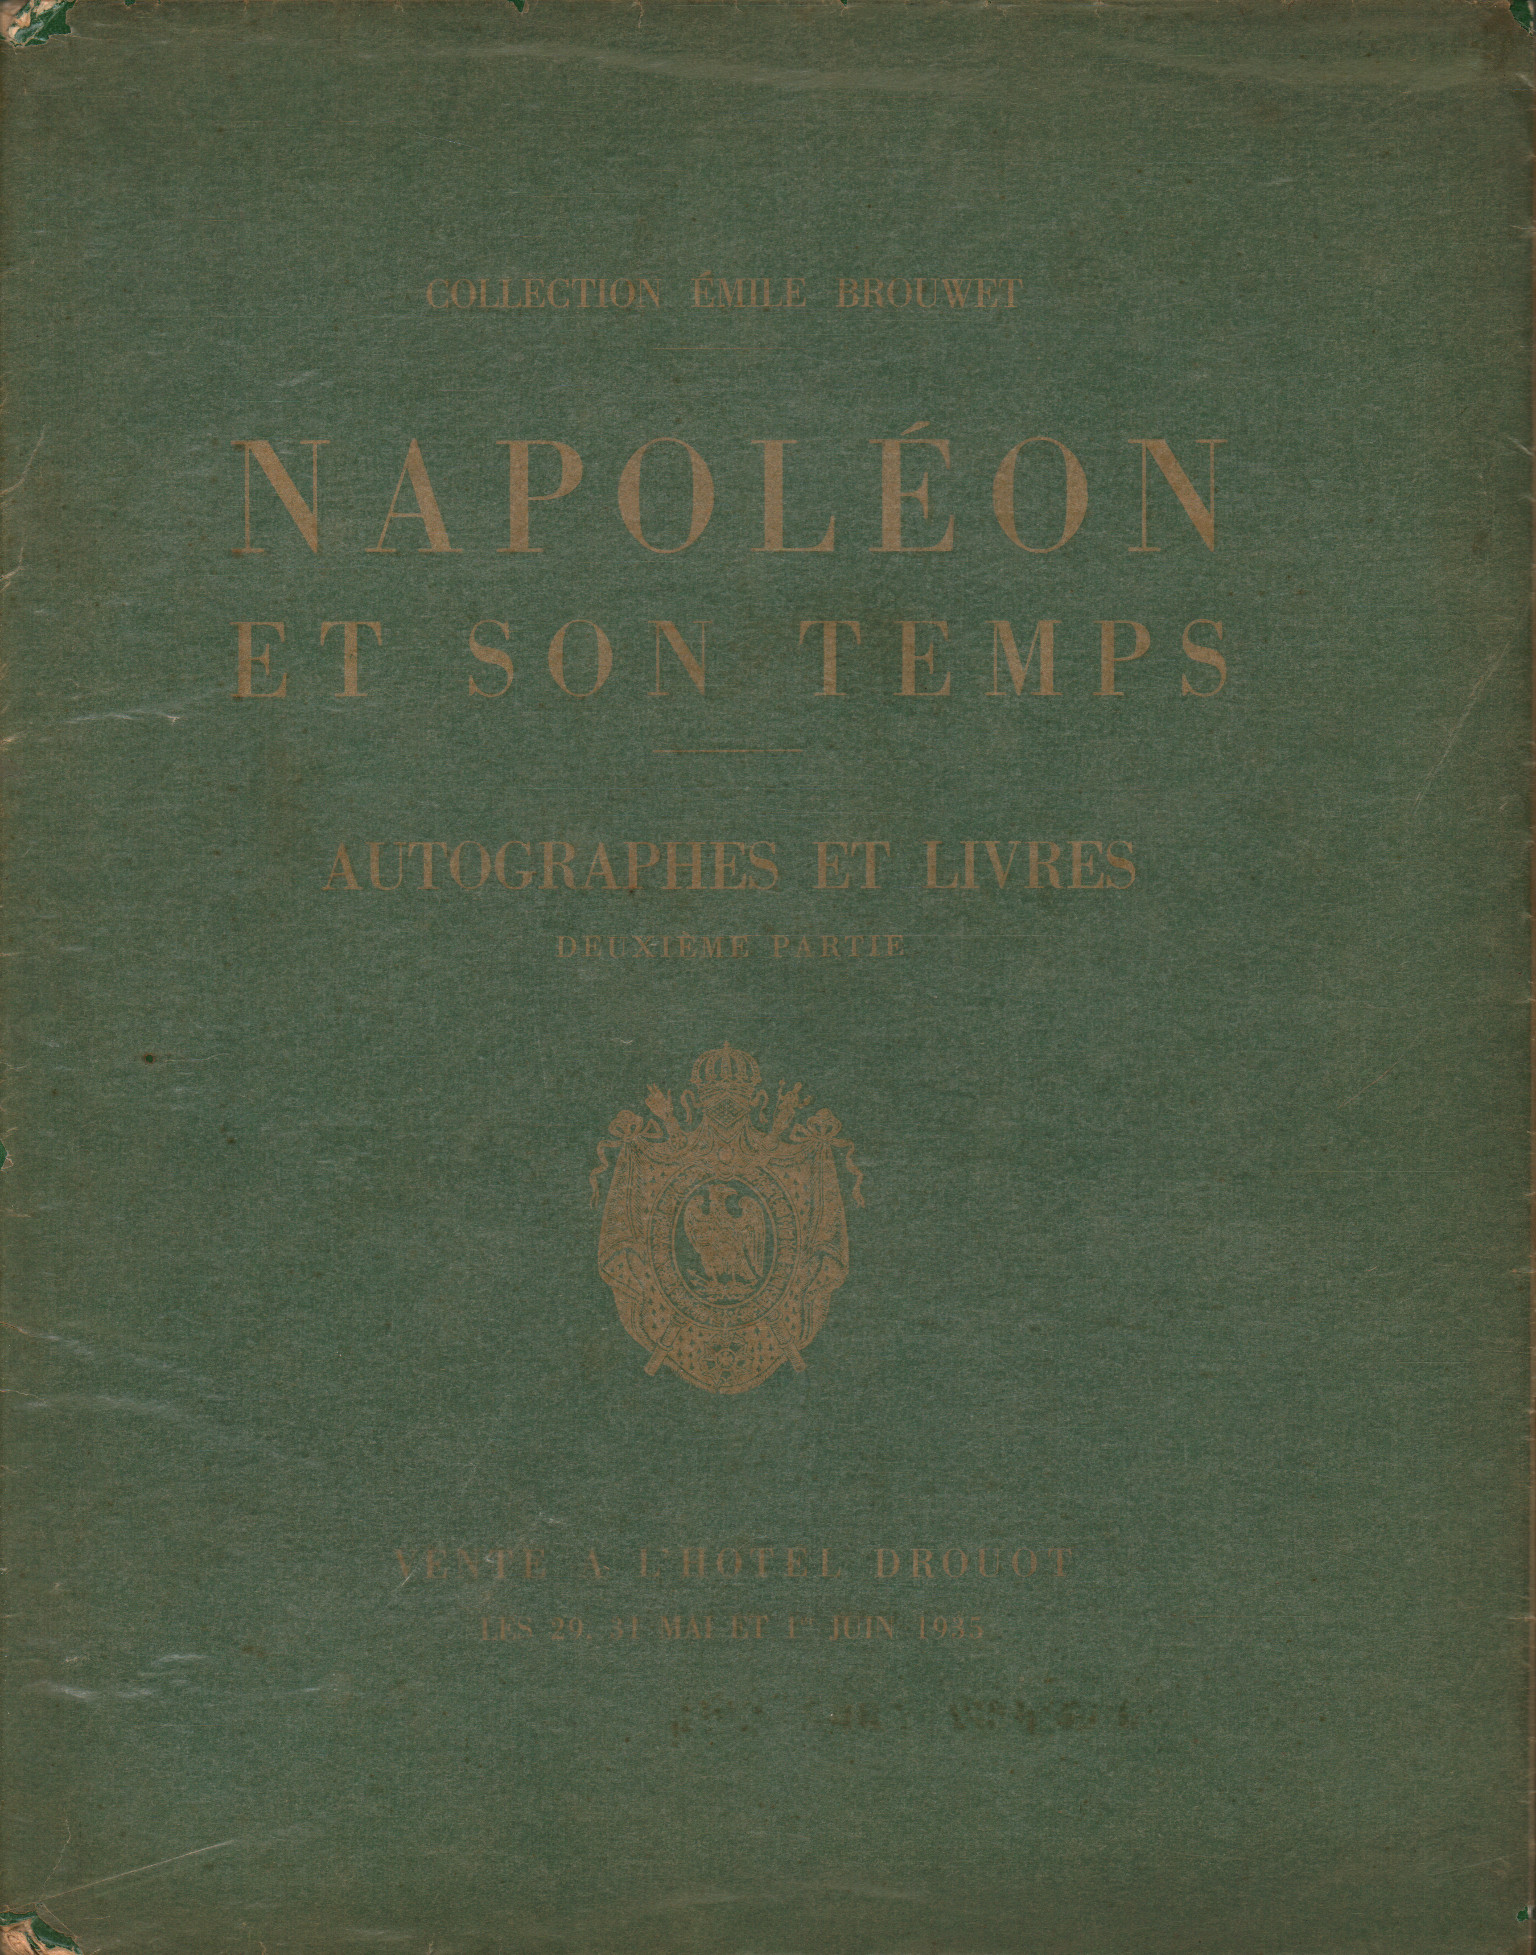 Napoleon und Sohn temps. Katalog de